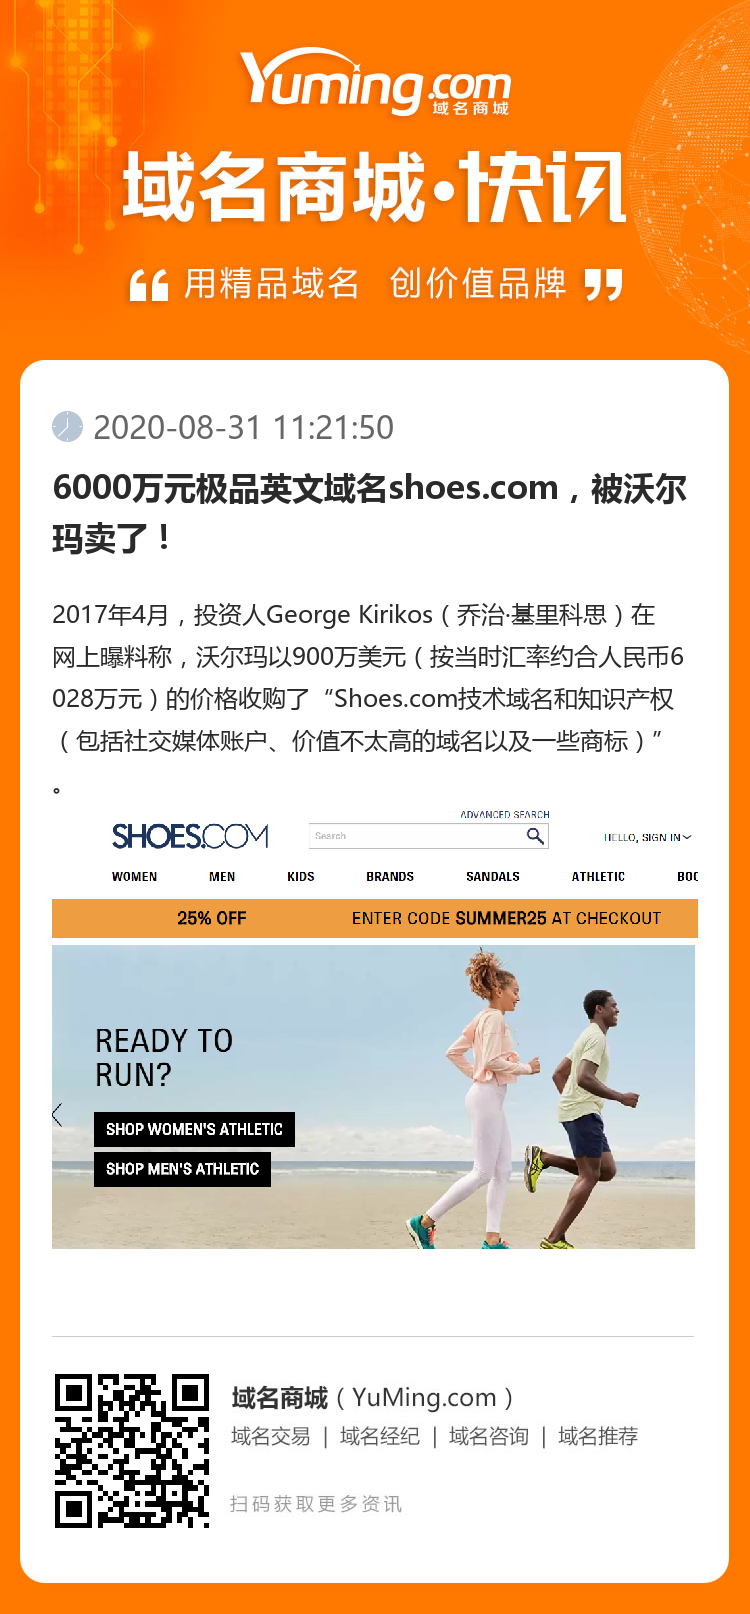 6000万元极品英文域名shoes.com，被沃尔玛卖了！